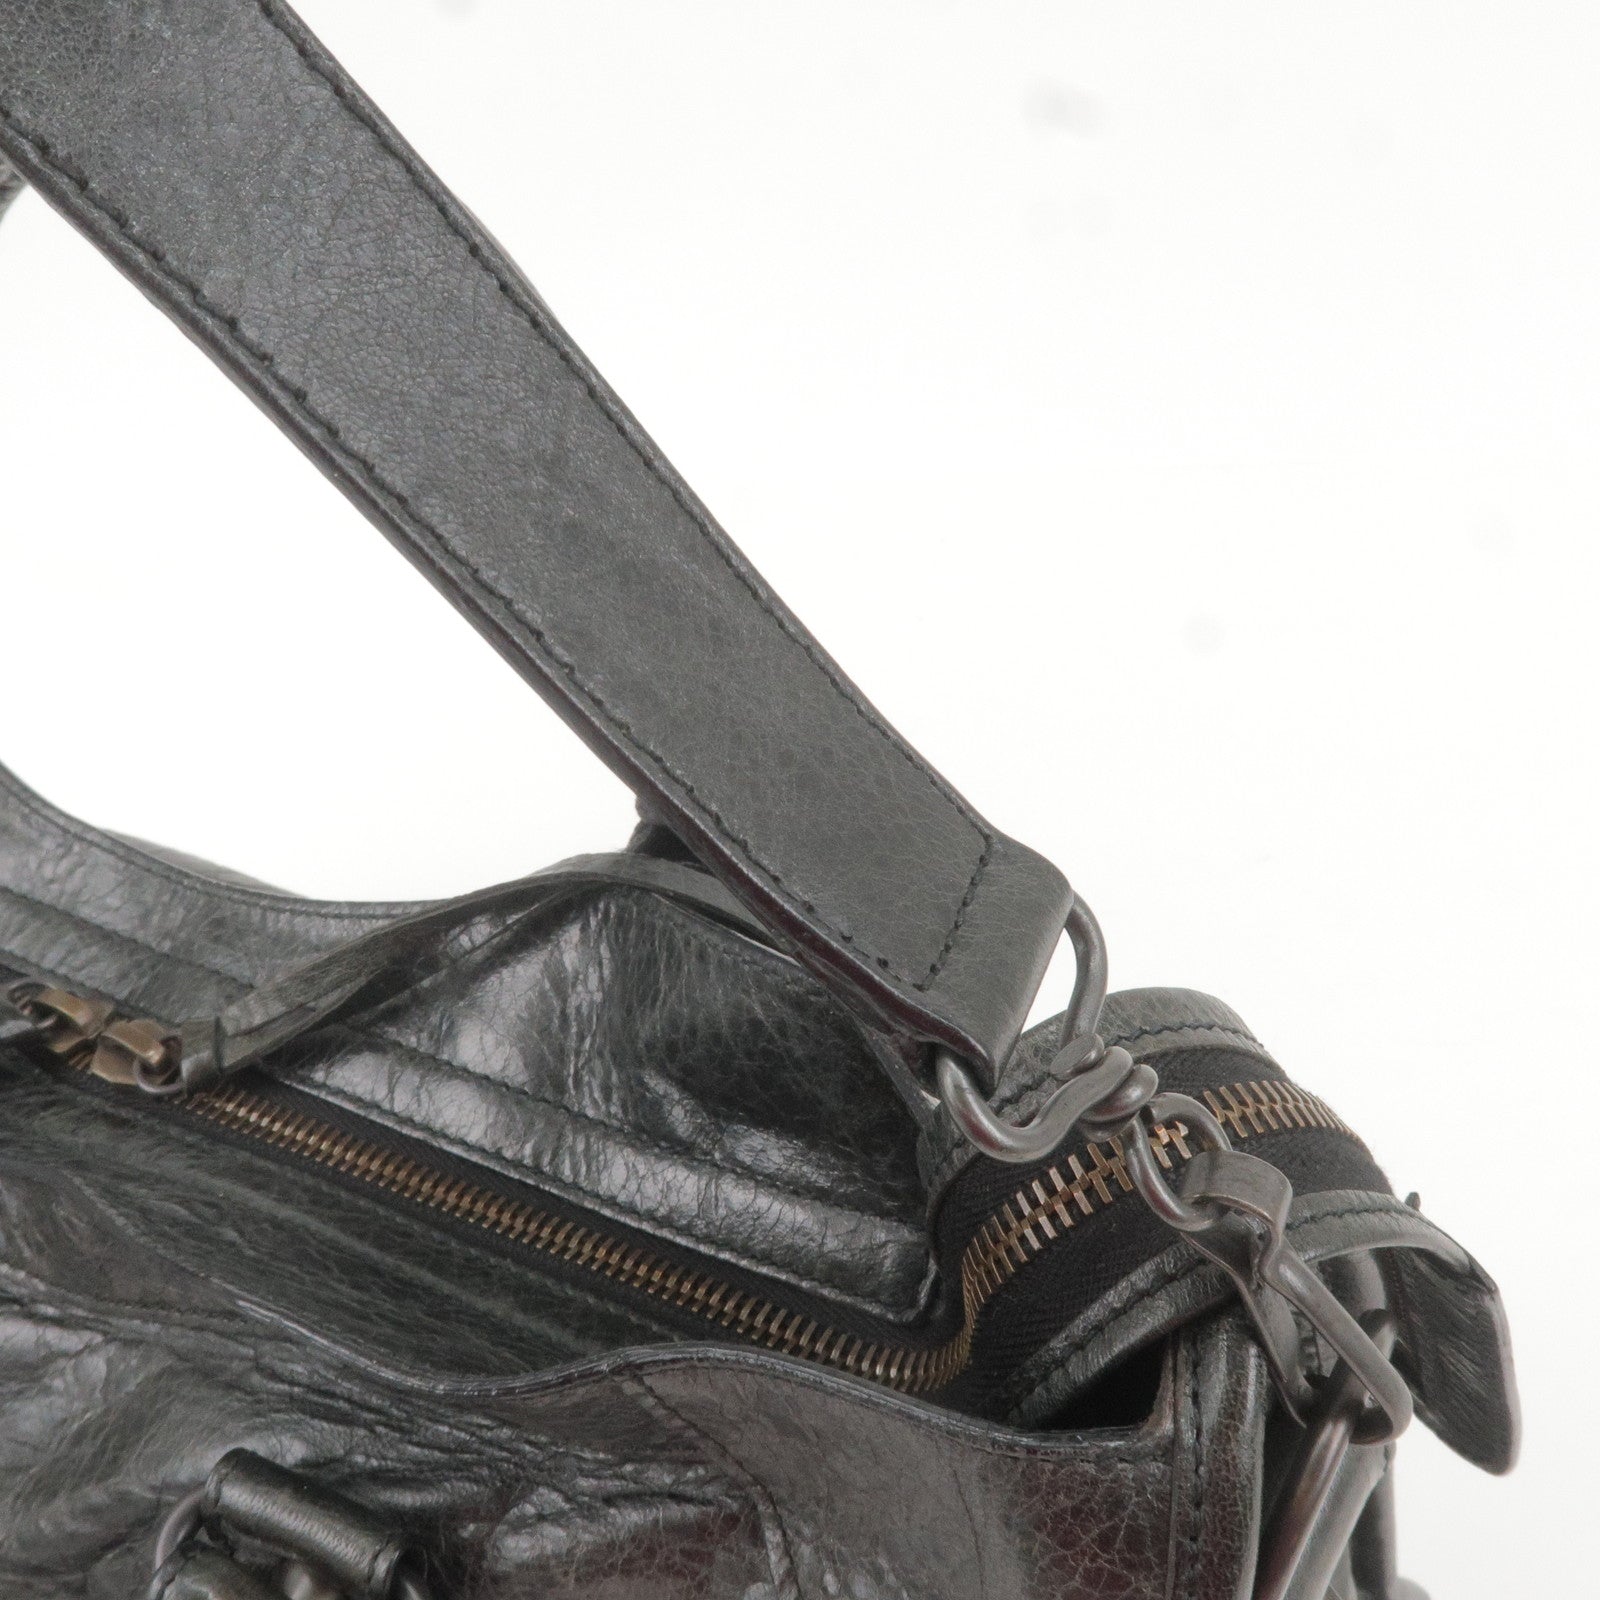 Louis-Vuitton-Set-of-15-Dust-Bag-Beige – dct-ep_vintage luxury Store